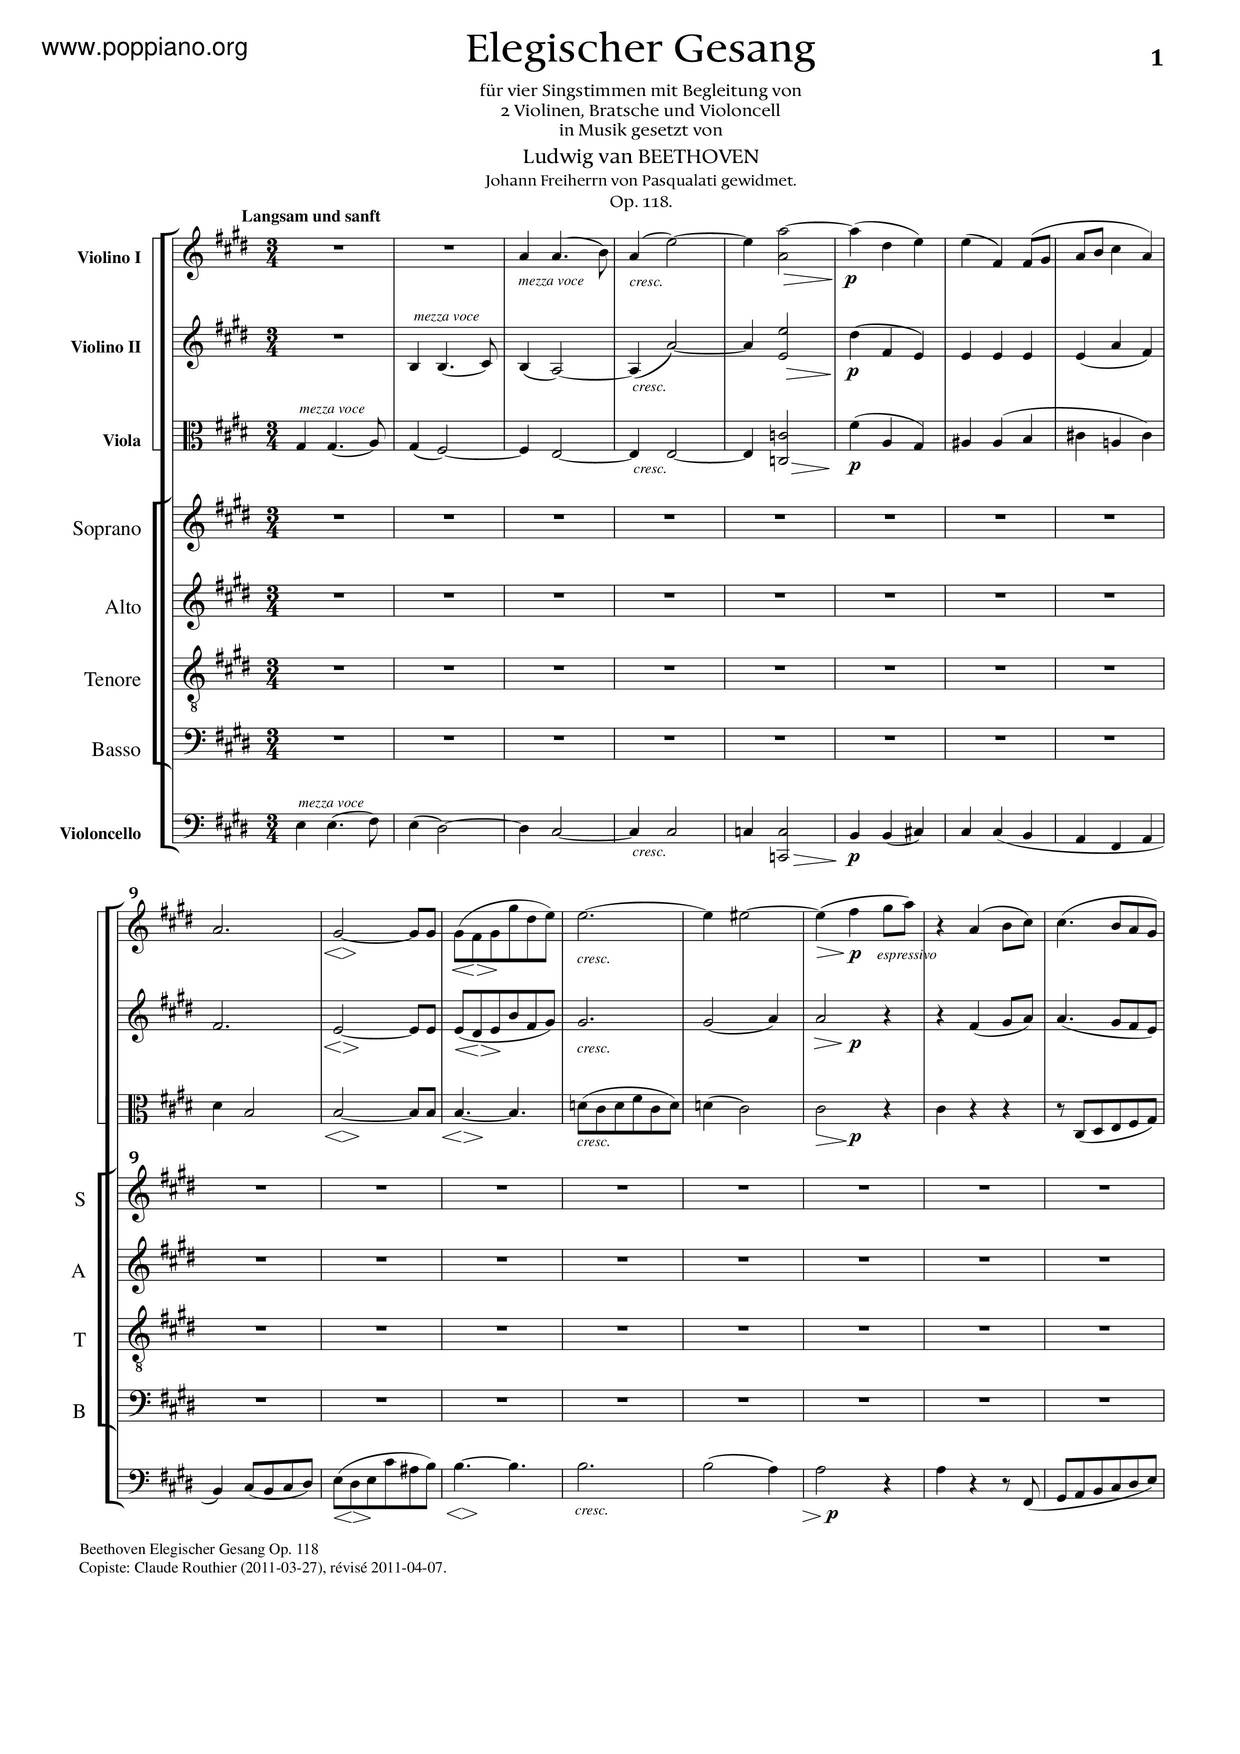 Elegischer Gesang, Op. 118 Score